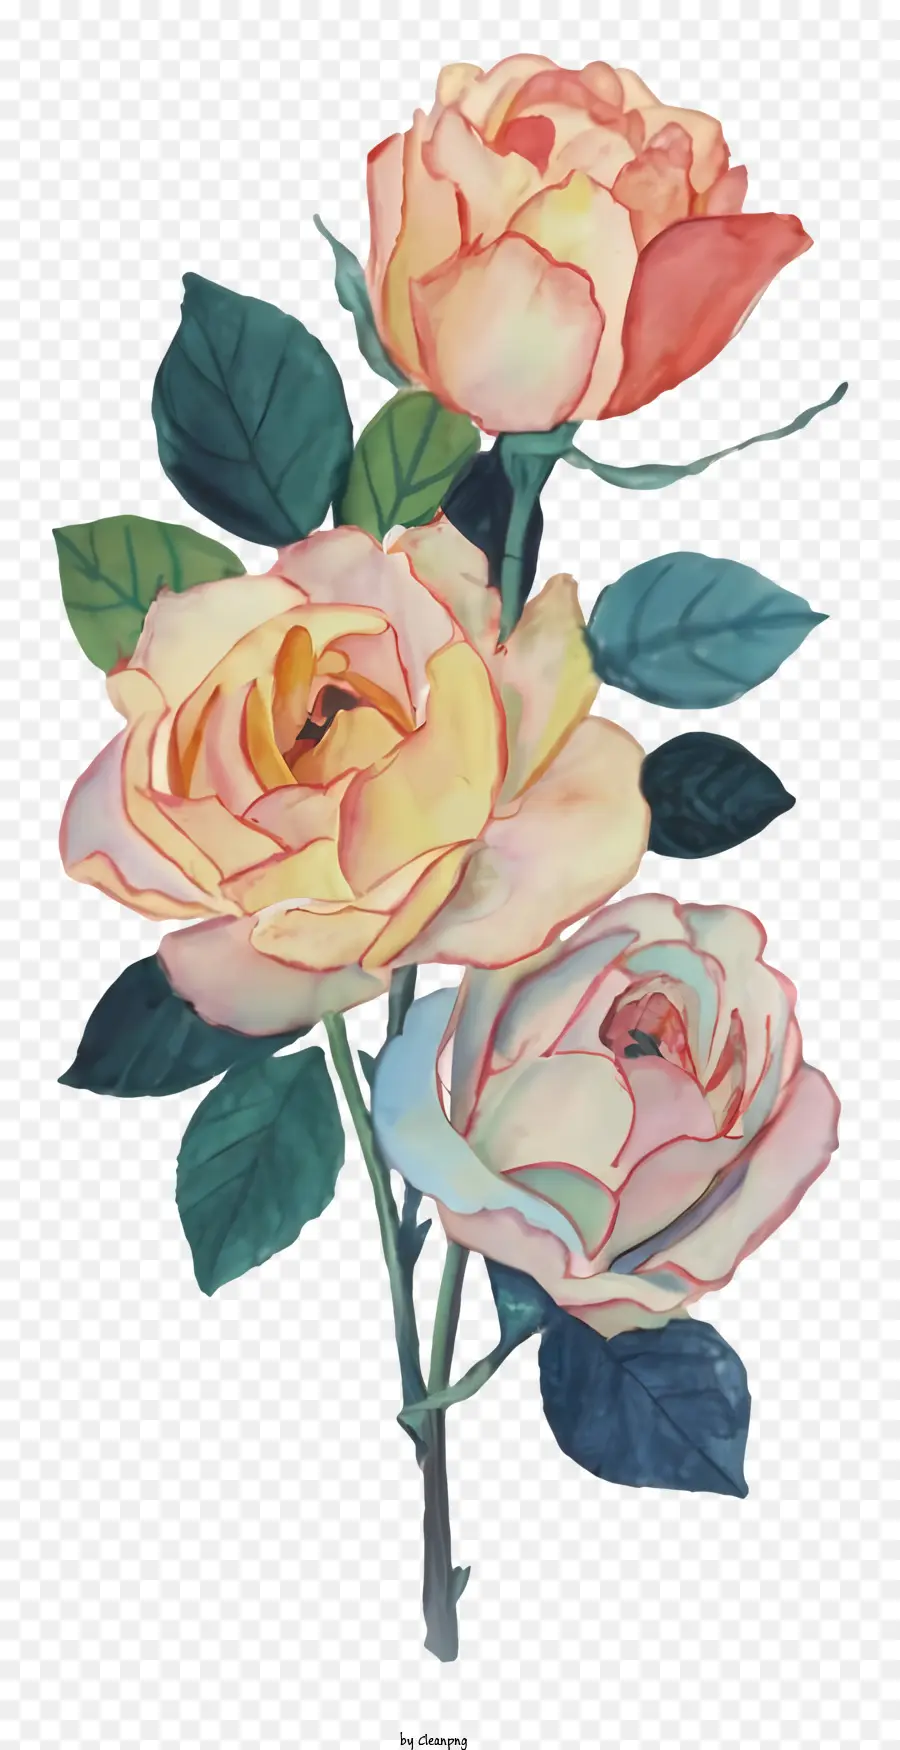 la disposizione dei fiori - Tre rose: rosso, pesca, giallo; 
rivolto a sinistra